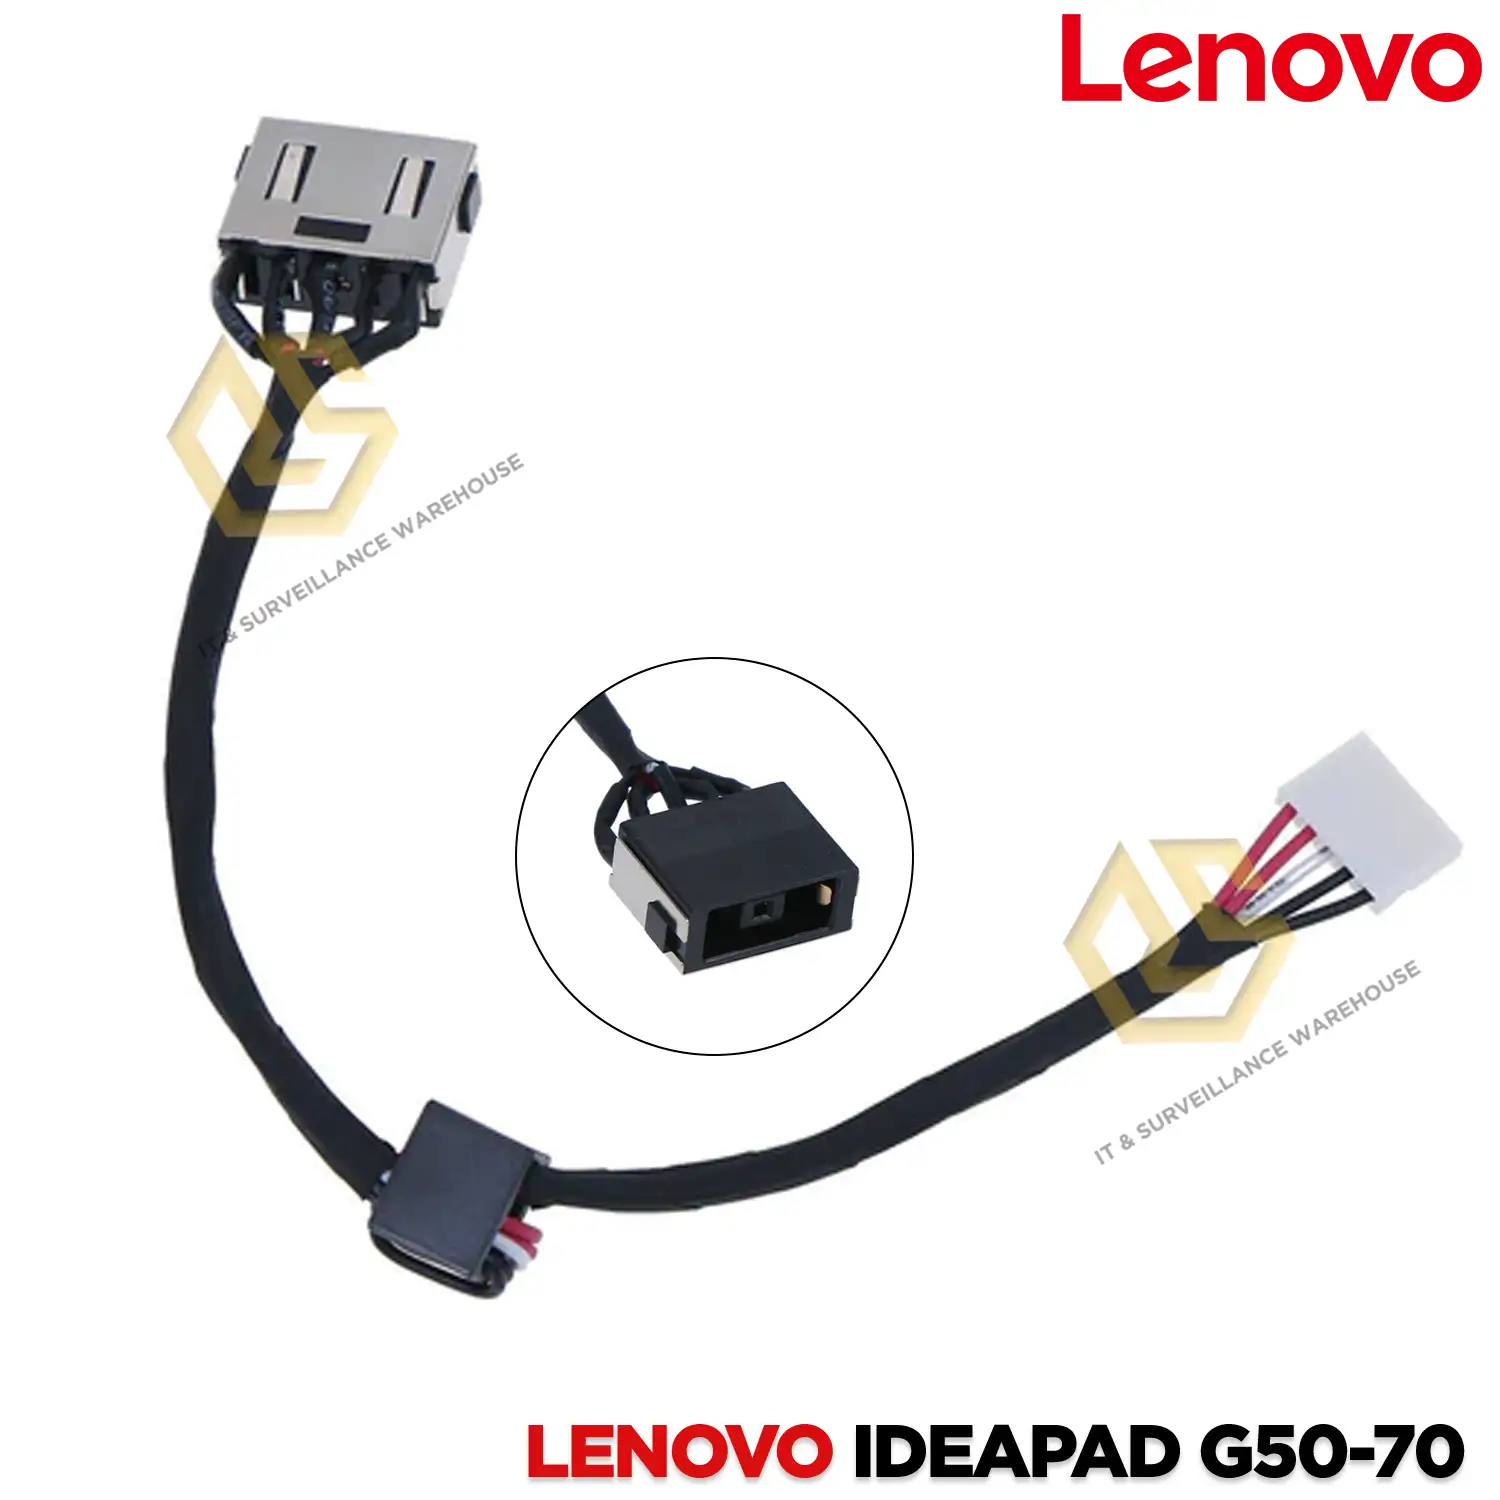 LAPTOP DC JACK FOR LENOVO IDEAPAD G50-70 | G50-30 | G50-45 | G50-80